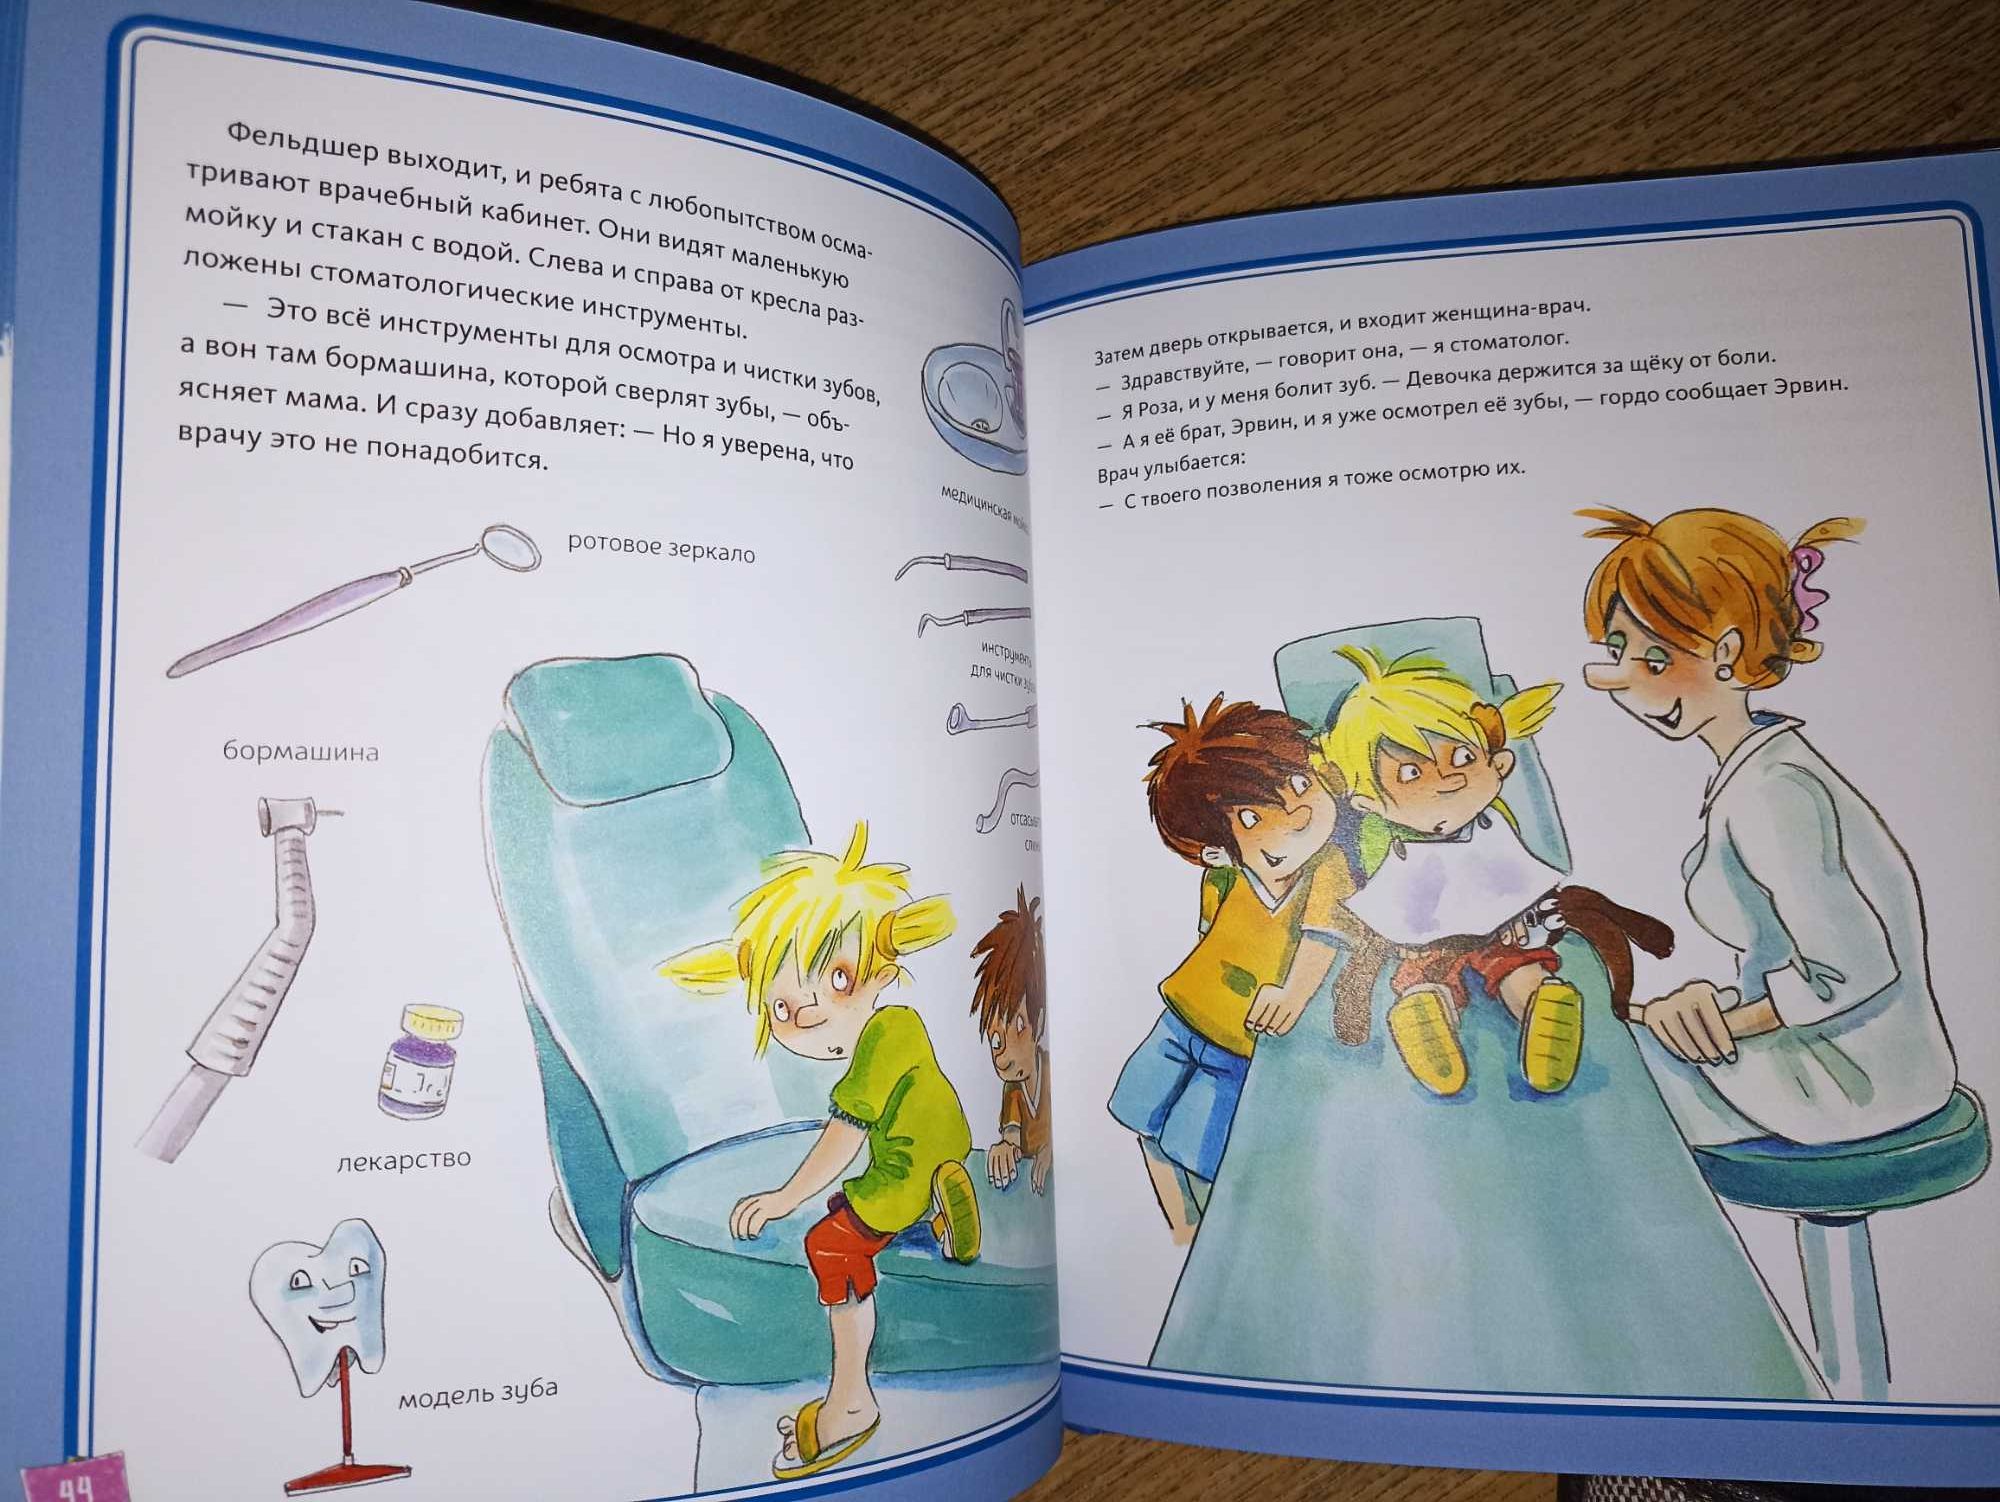 Махаон детская энциклопедия Большая книга здоровья для всей семьи